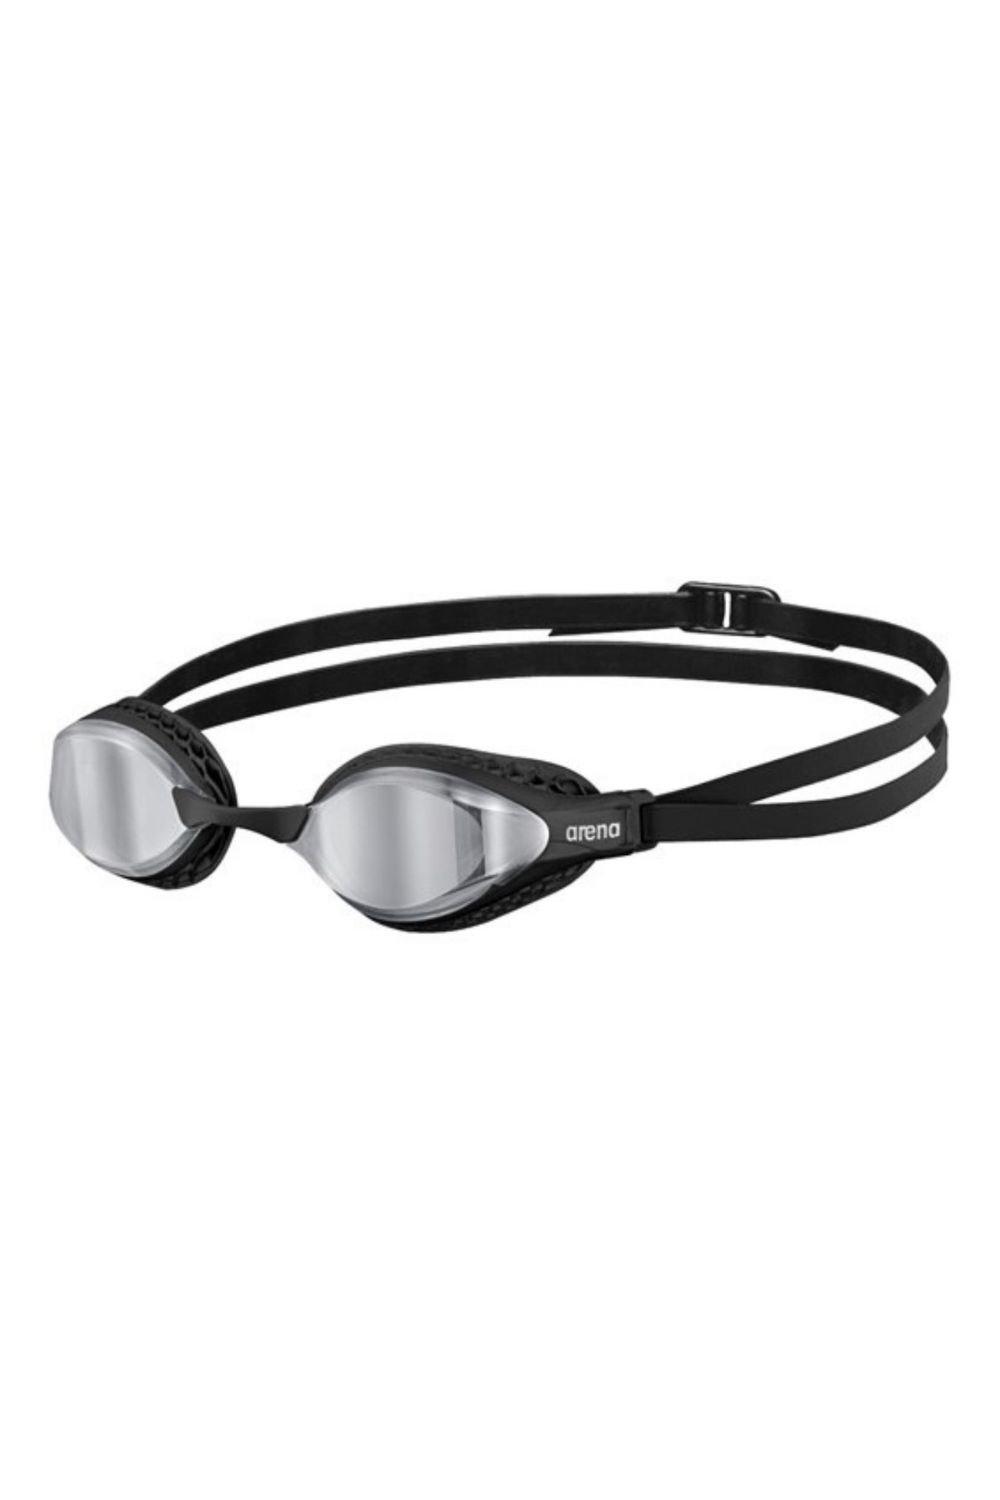 Очки для плавания с зеркалом Airspeed Arena, черный очки для плавания детские очки для плавания прямые продажи с завода водонепроницаемые противотуманные детские силиконовые очки очки